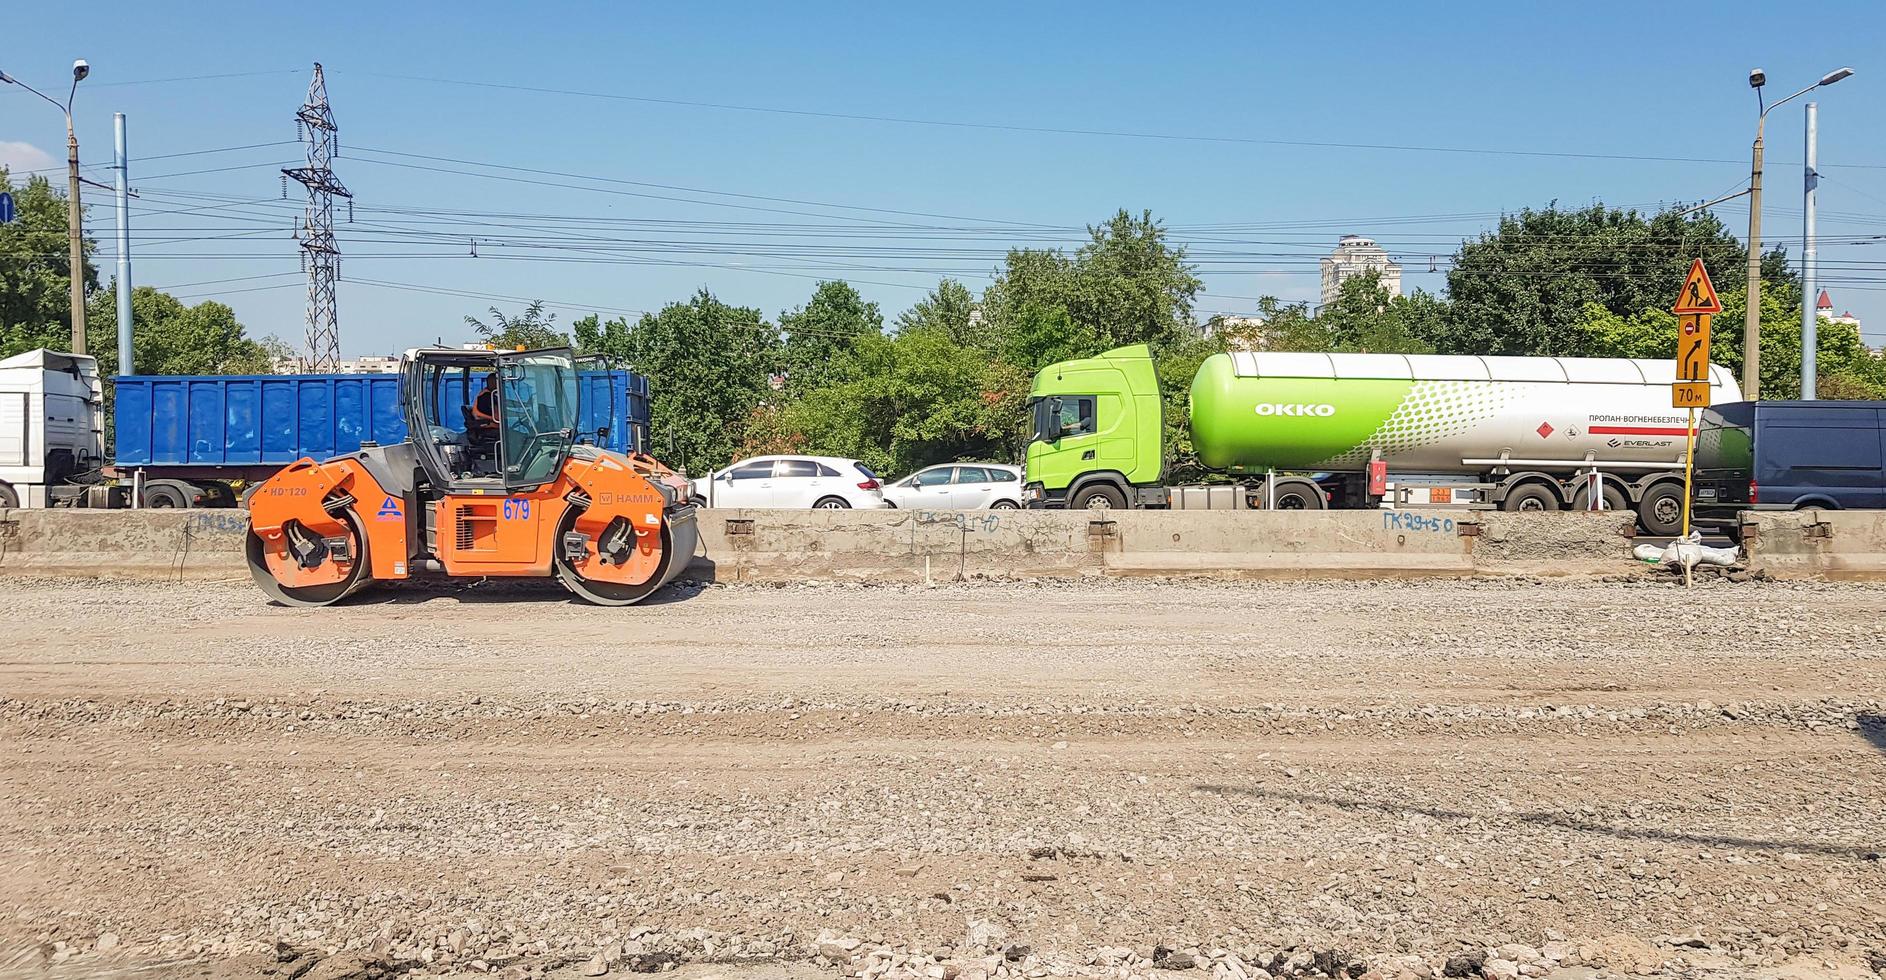 Ukraine, Kiew - 1. Oktober 2019. Straßenwalze, Traktor und Baumaschinen arbeiten an einer neuen Straßenbaustelle. die Straße ist wegen Straßenreparatur, Streckenverlängerung, Schlaglochreparatur gesperrt foto